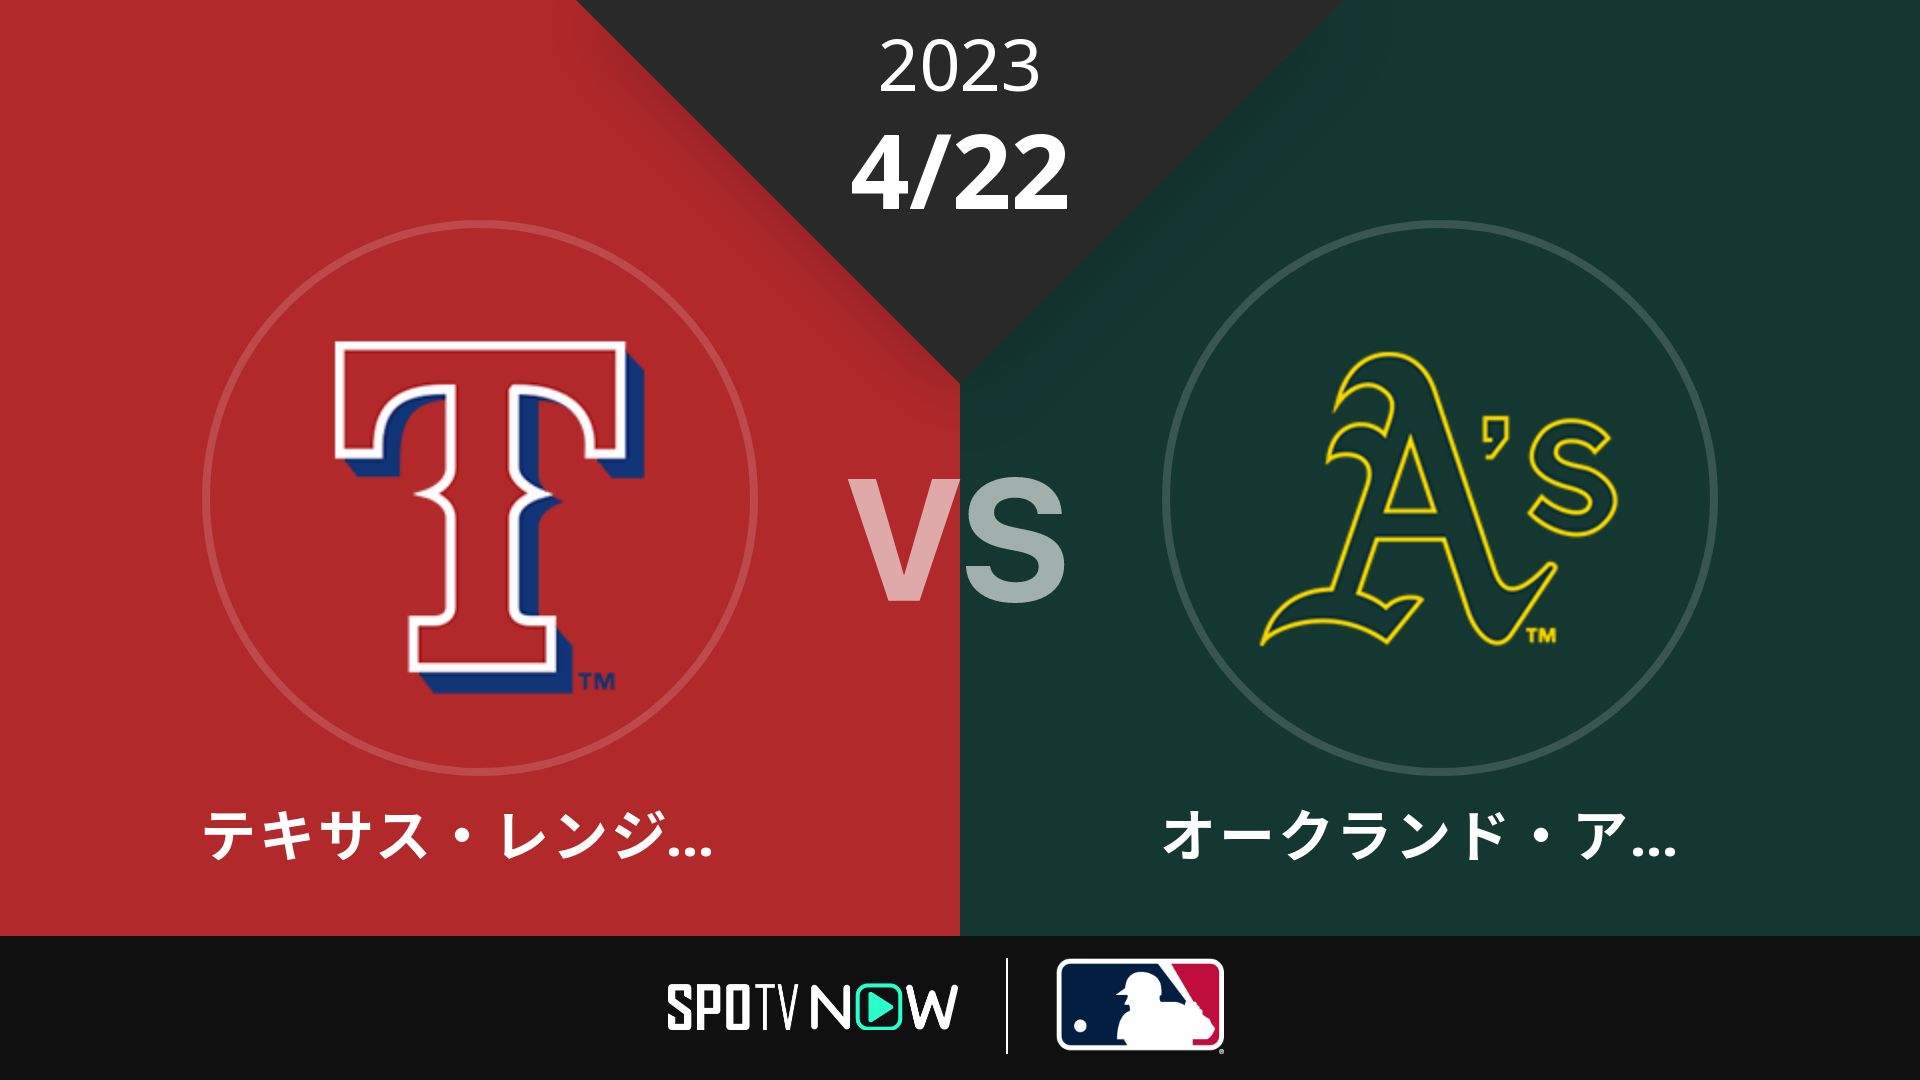 2023/4/22 レンジャーズ vs アスレチックス [MLB]